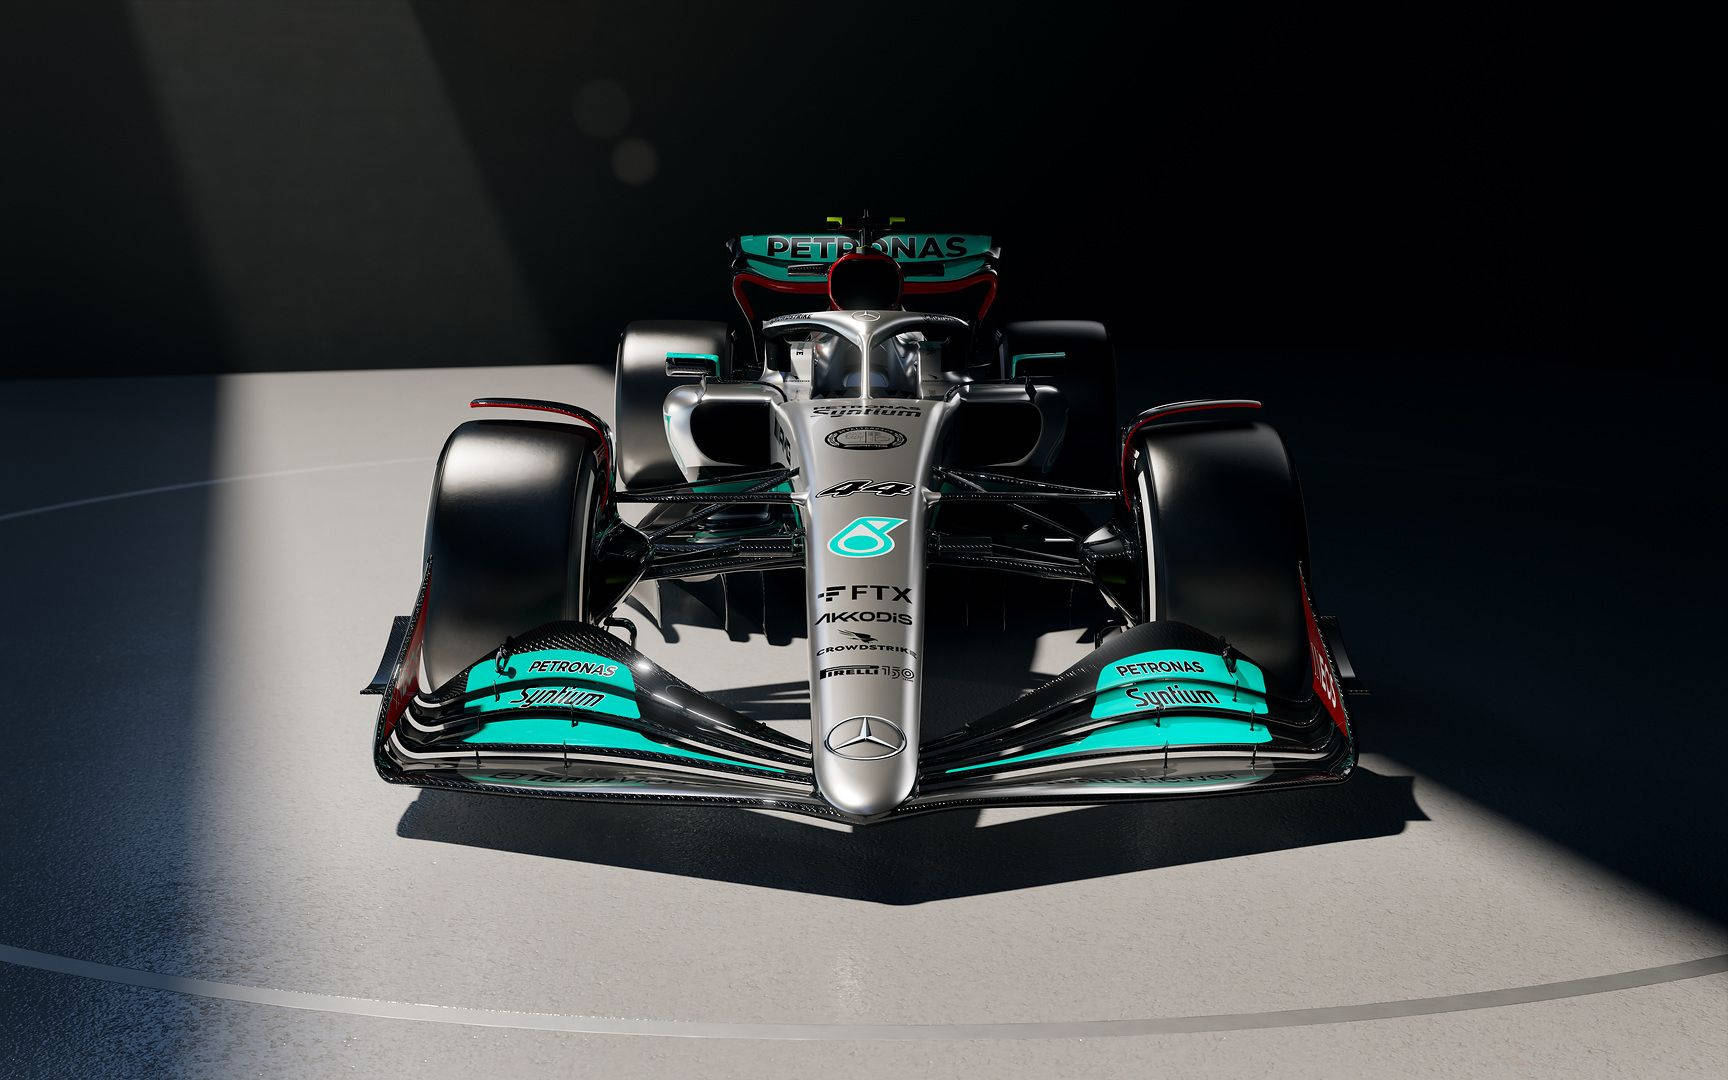 Tag din F1-racering-oplevelse med dig overalt med Mercedes-F1 tema iPhone. Wallpaper